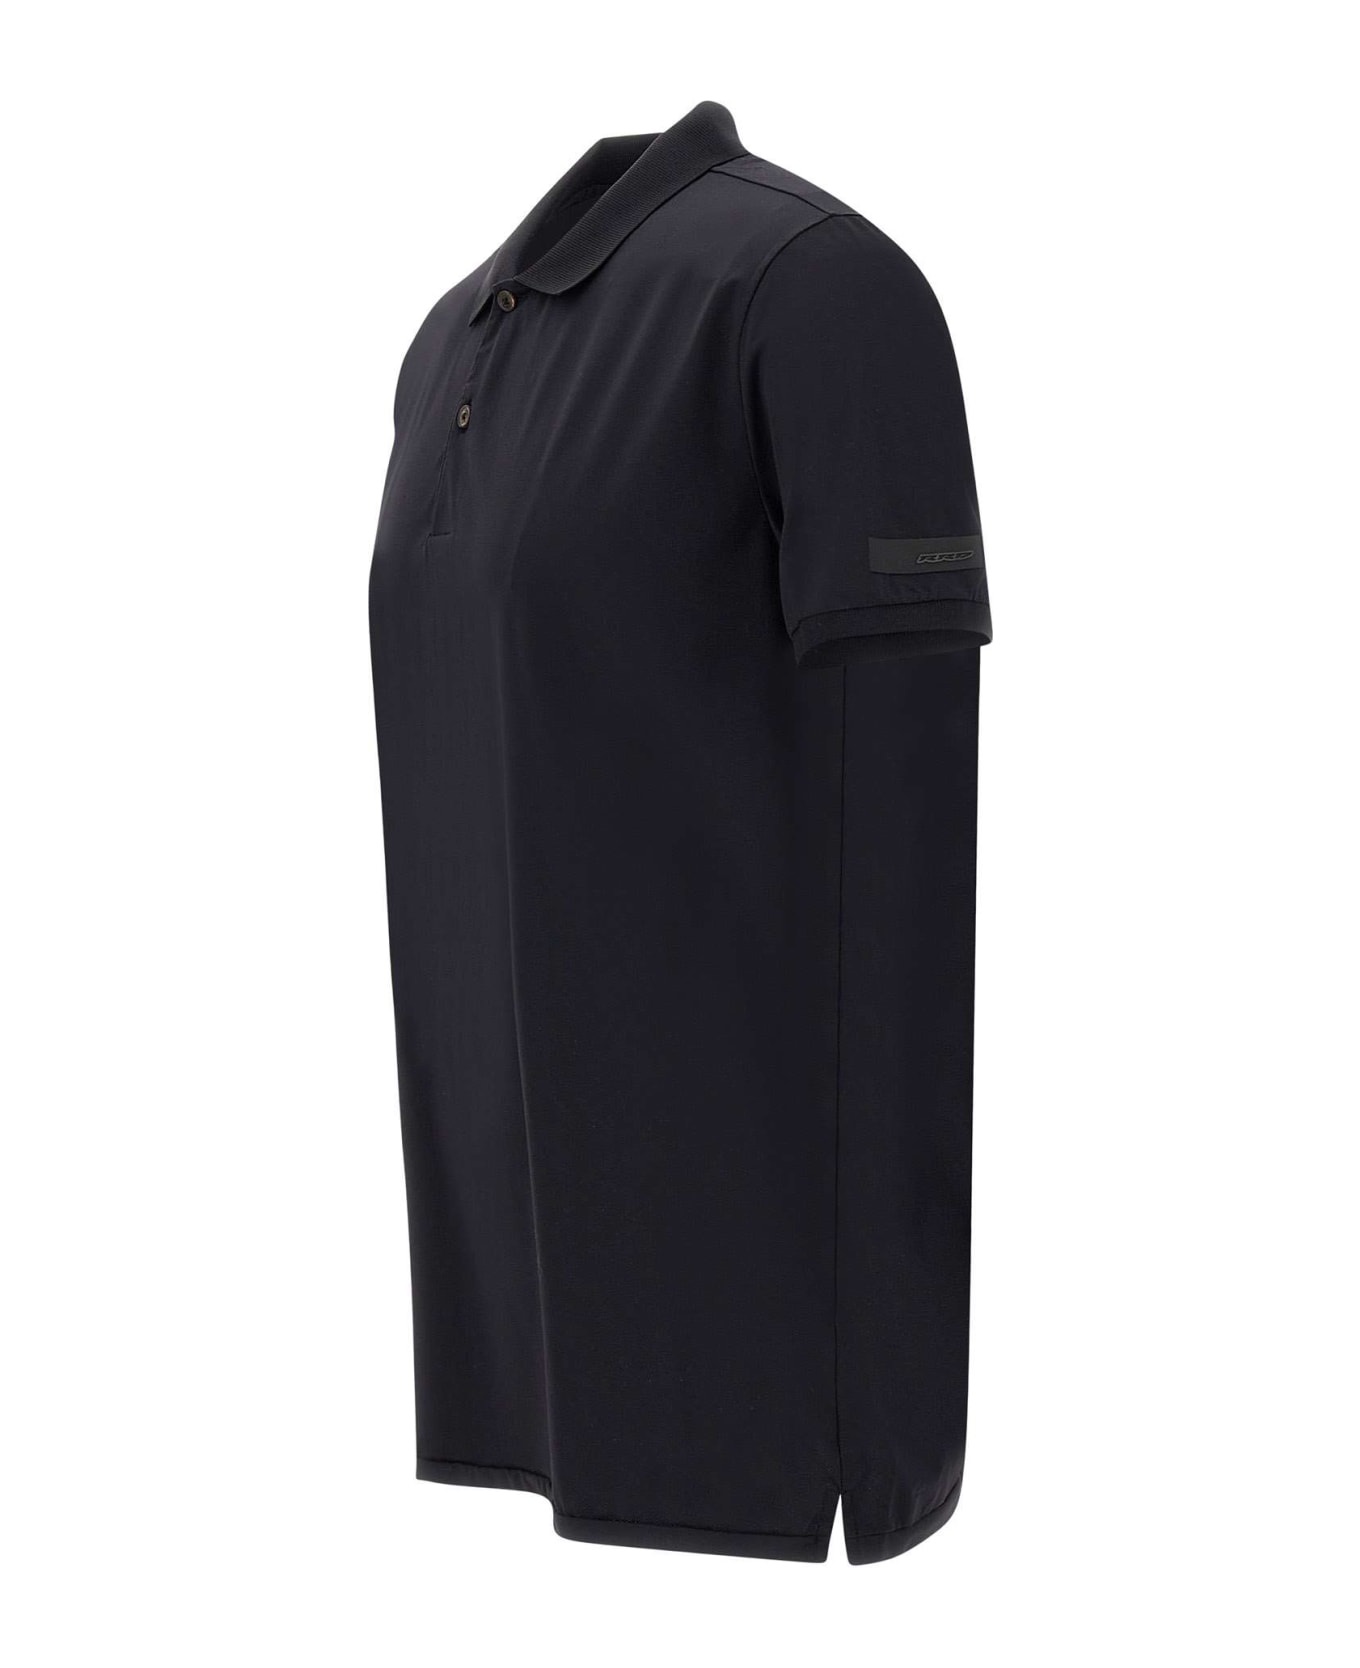 RRD - Roberto Ricci Design 'gdy' Oxford Polo Shirt Polo Shirt - NERO